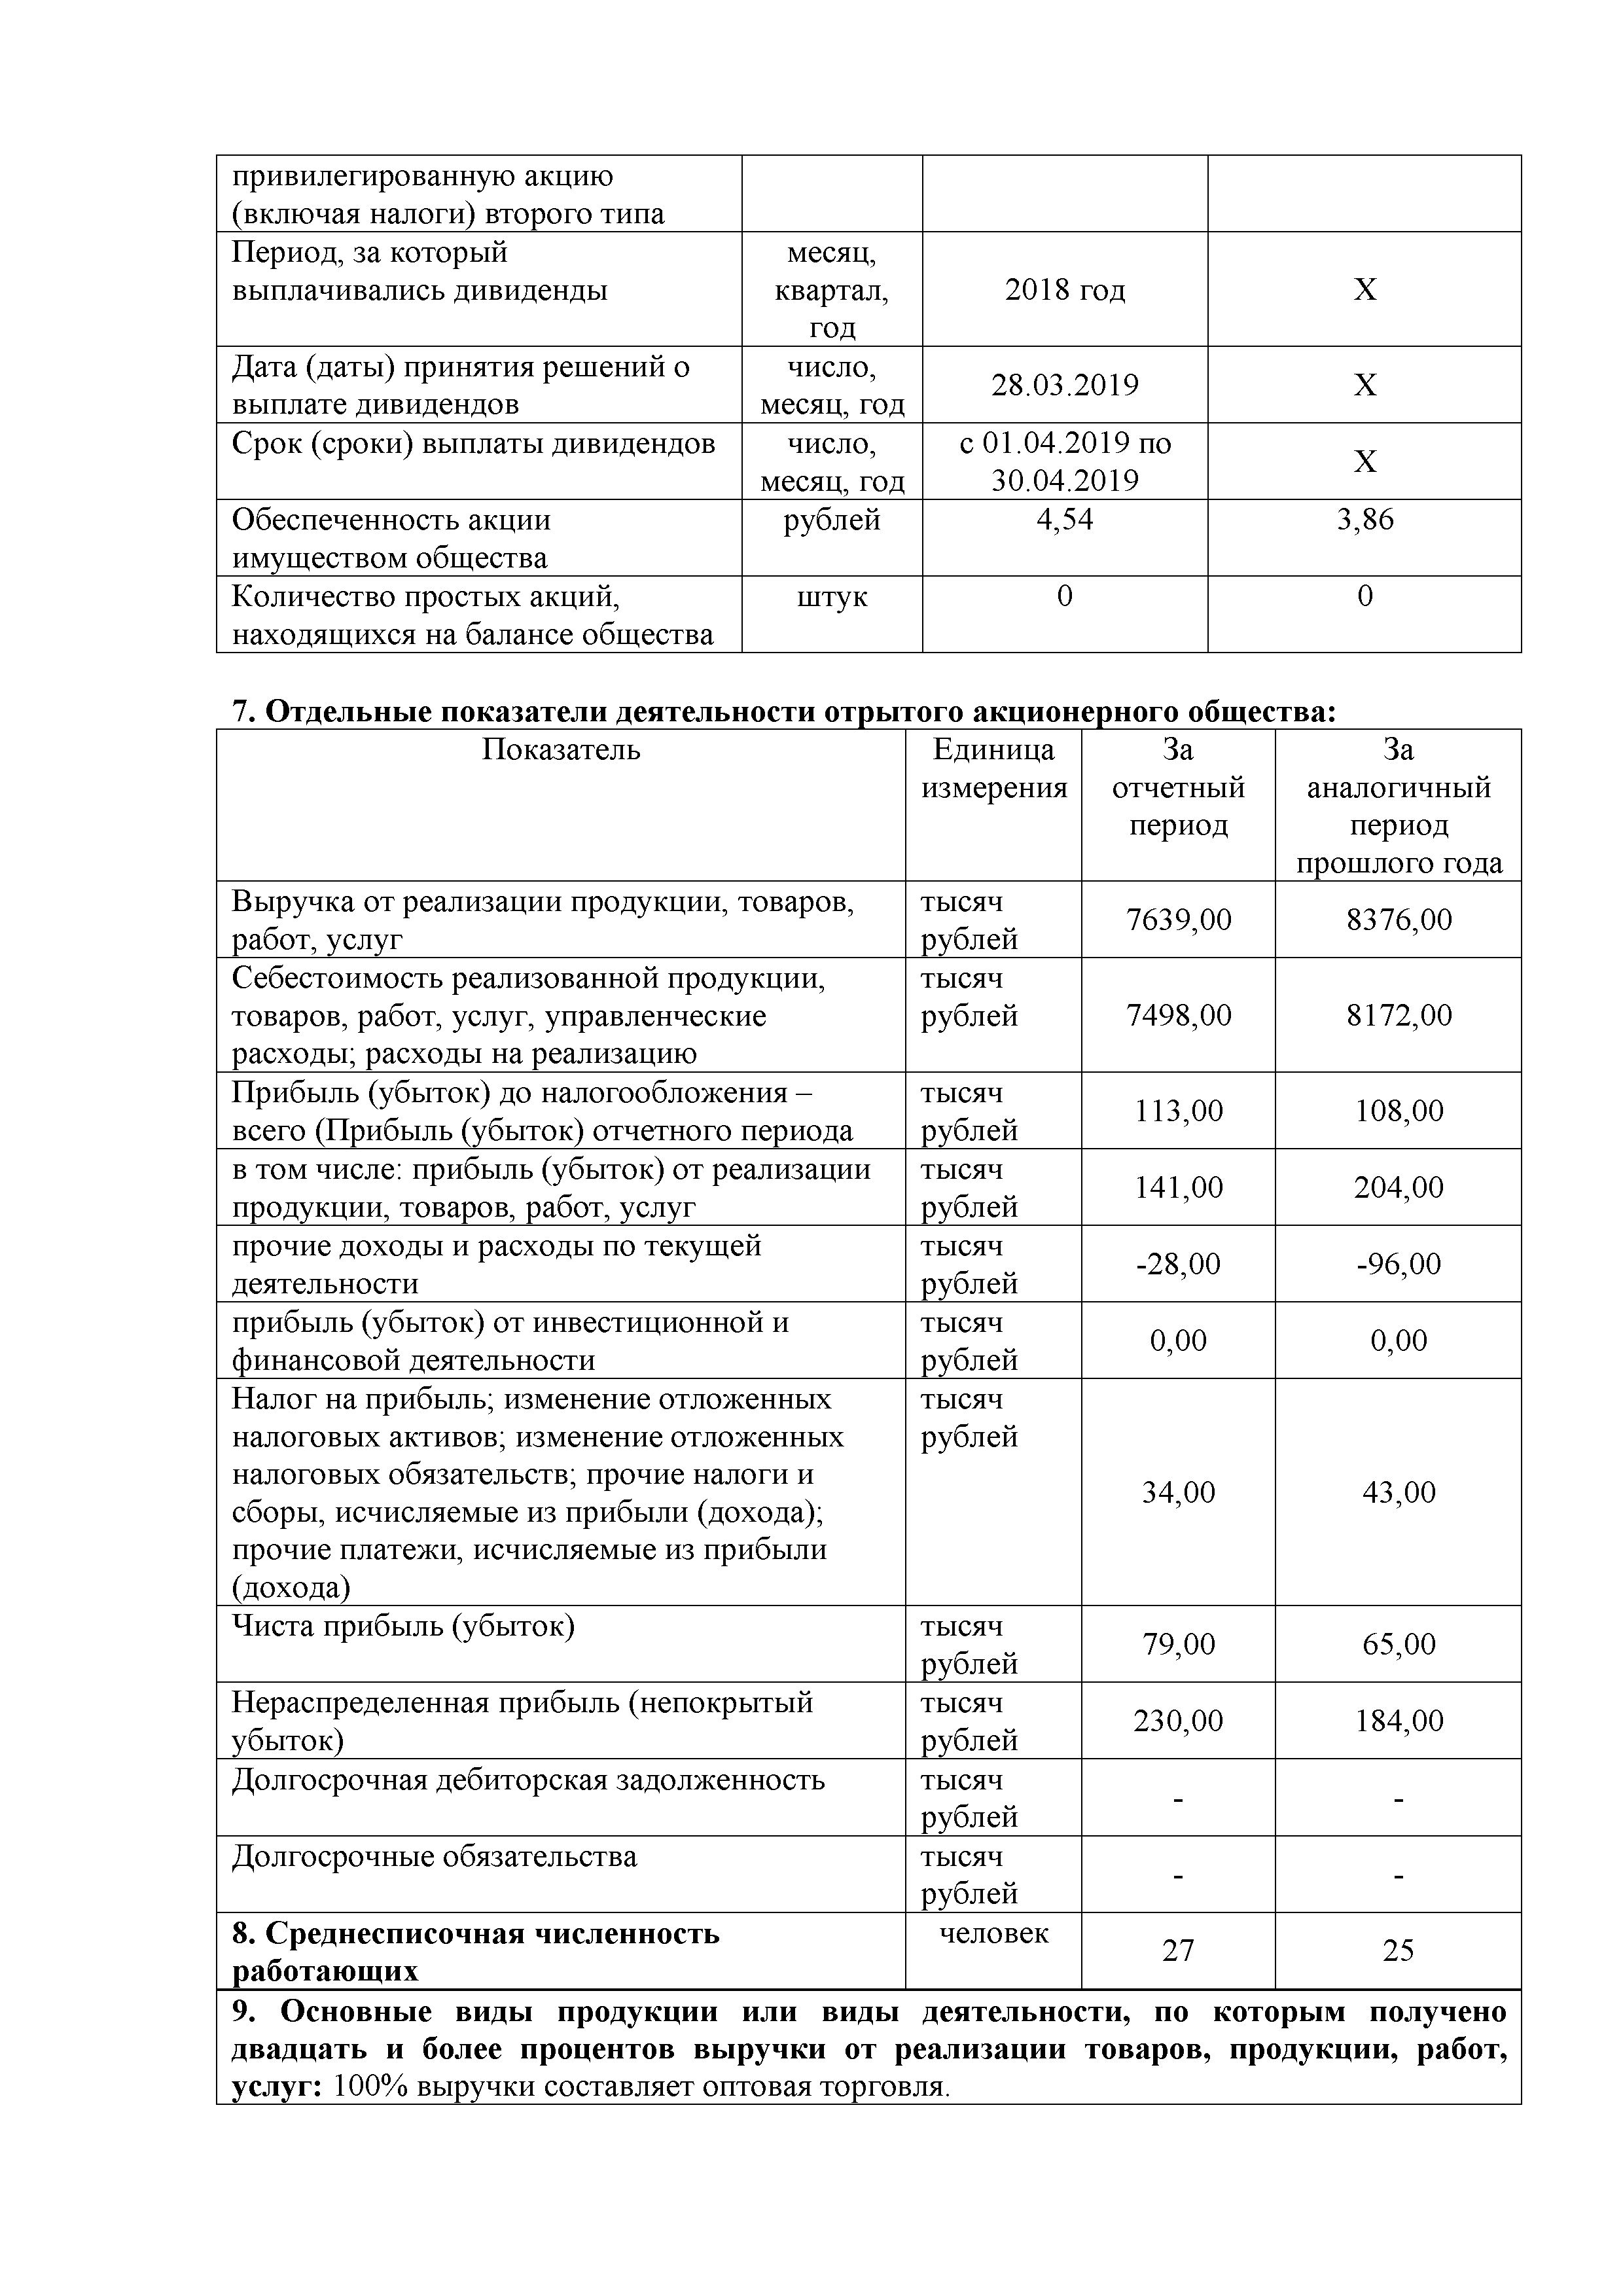 ОАО Торговый дом Сож - Годовой отчет эмитента